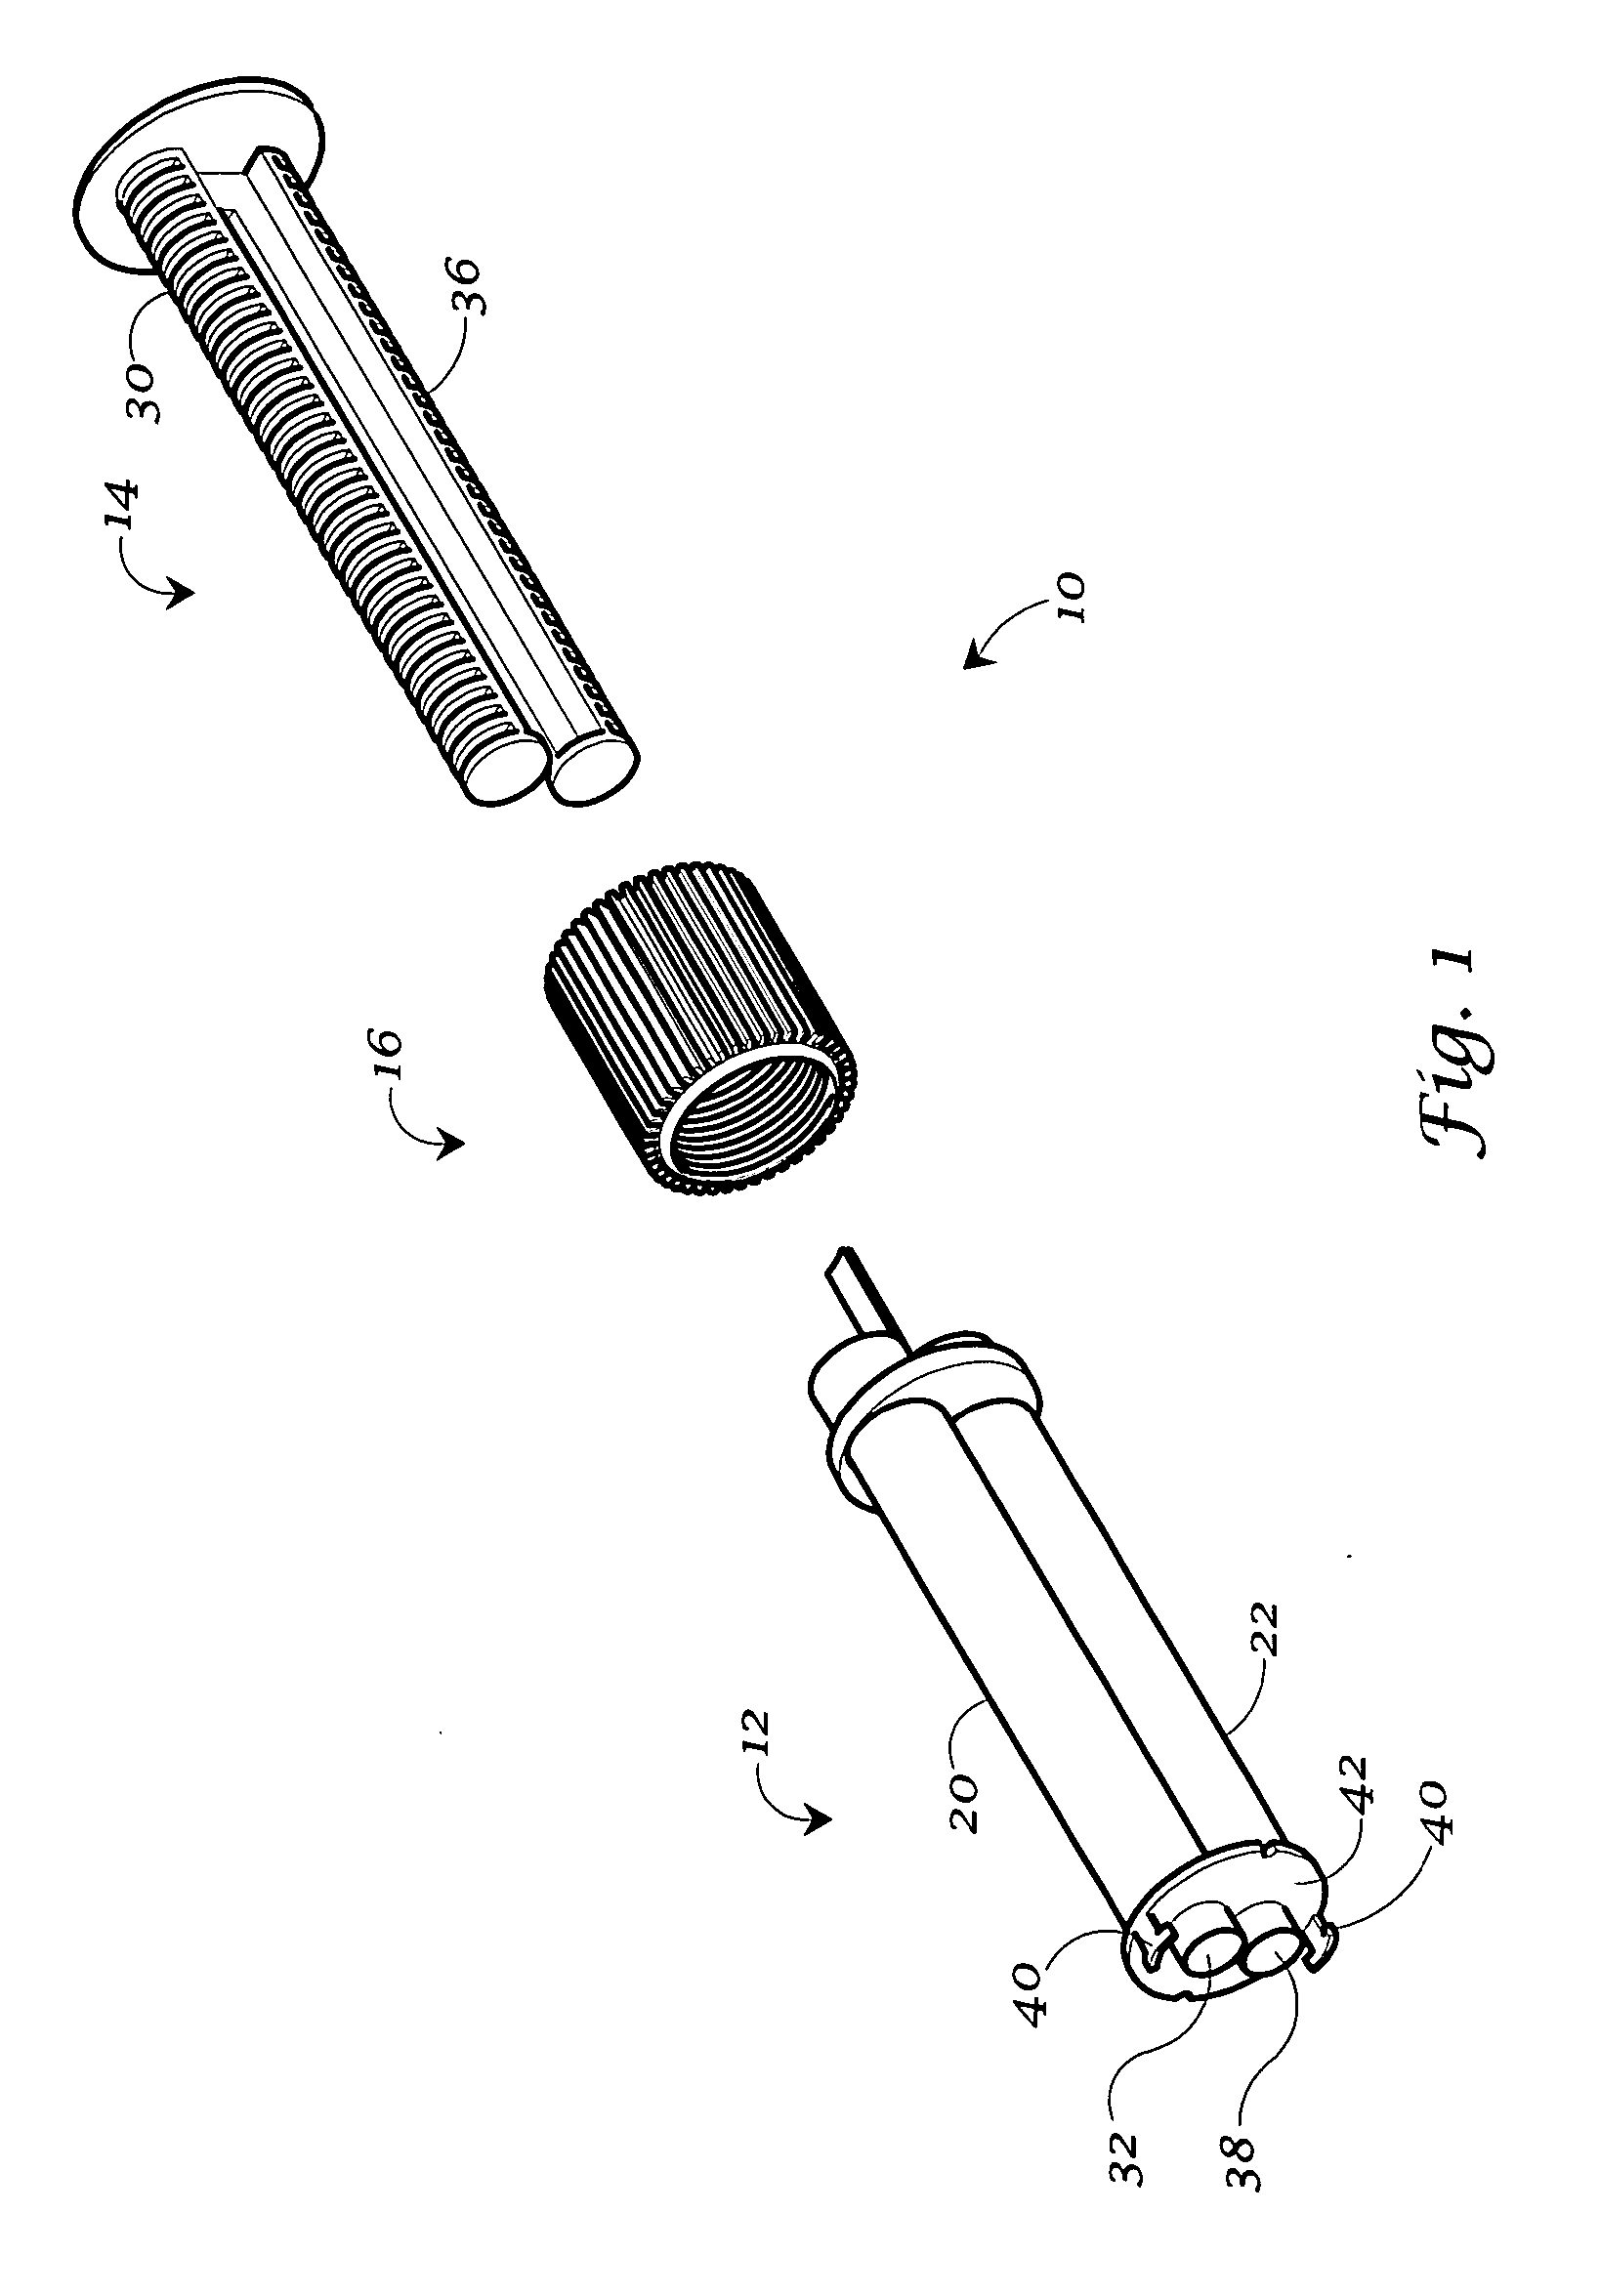 Dispensing syringe having multiple barrels for discharging a dental composition